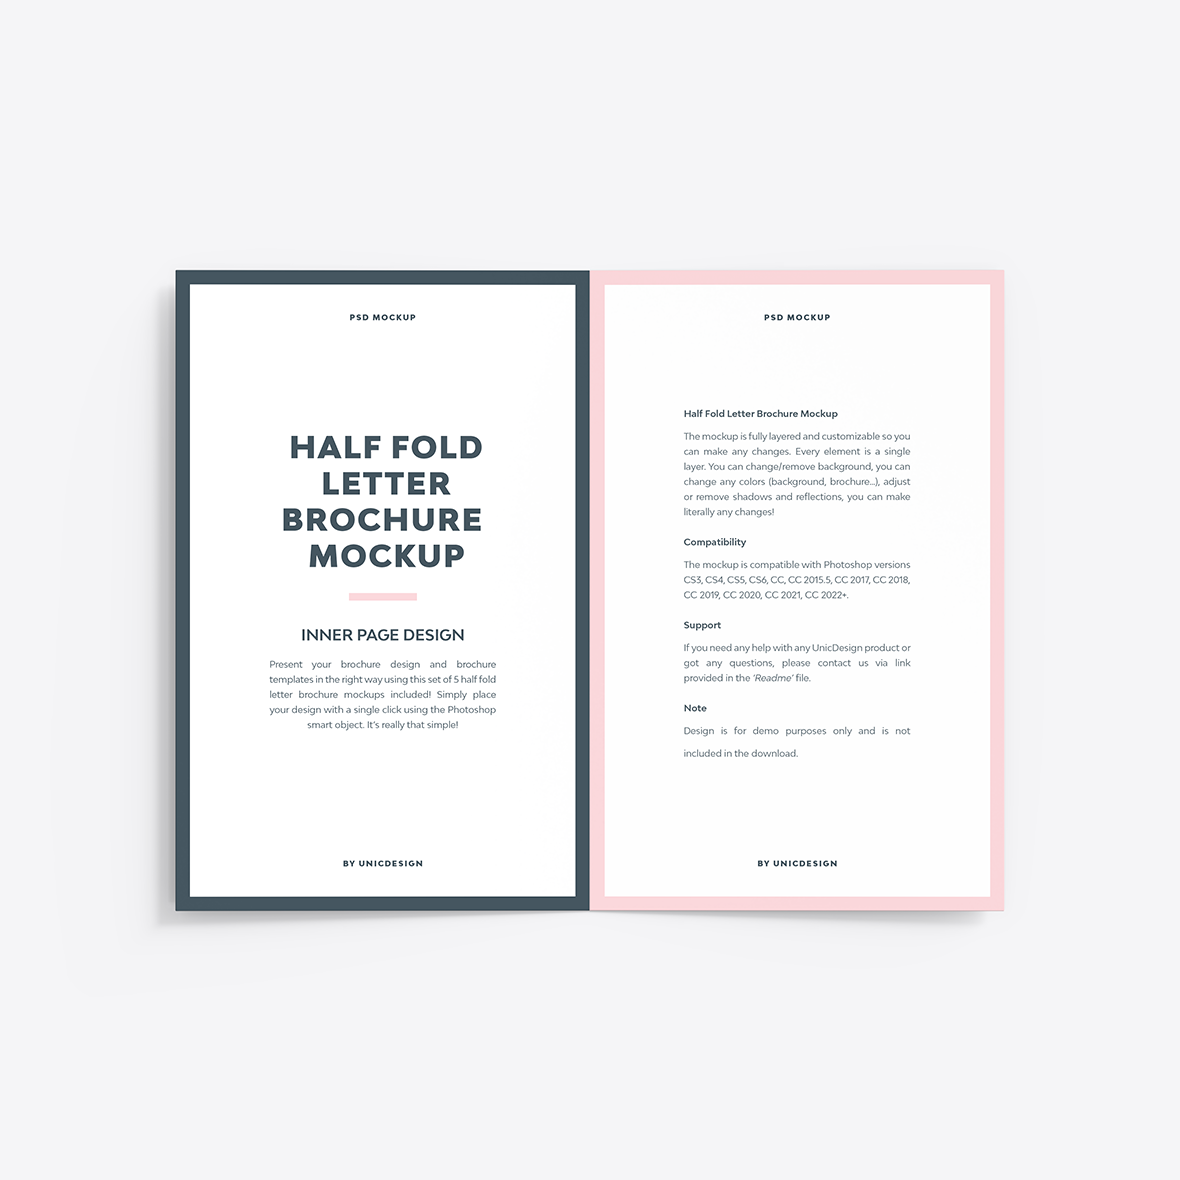 Half Fold Letter Brochure Mockup